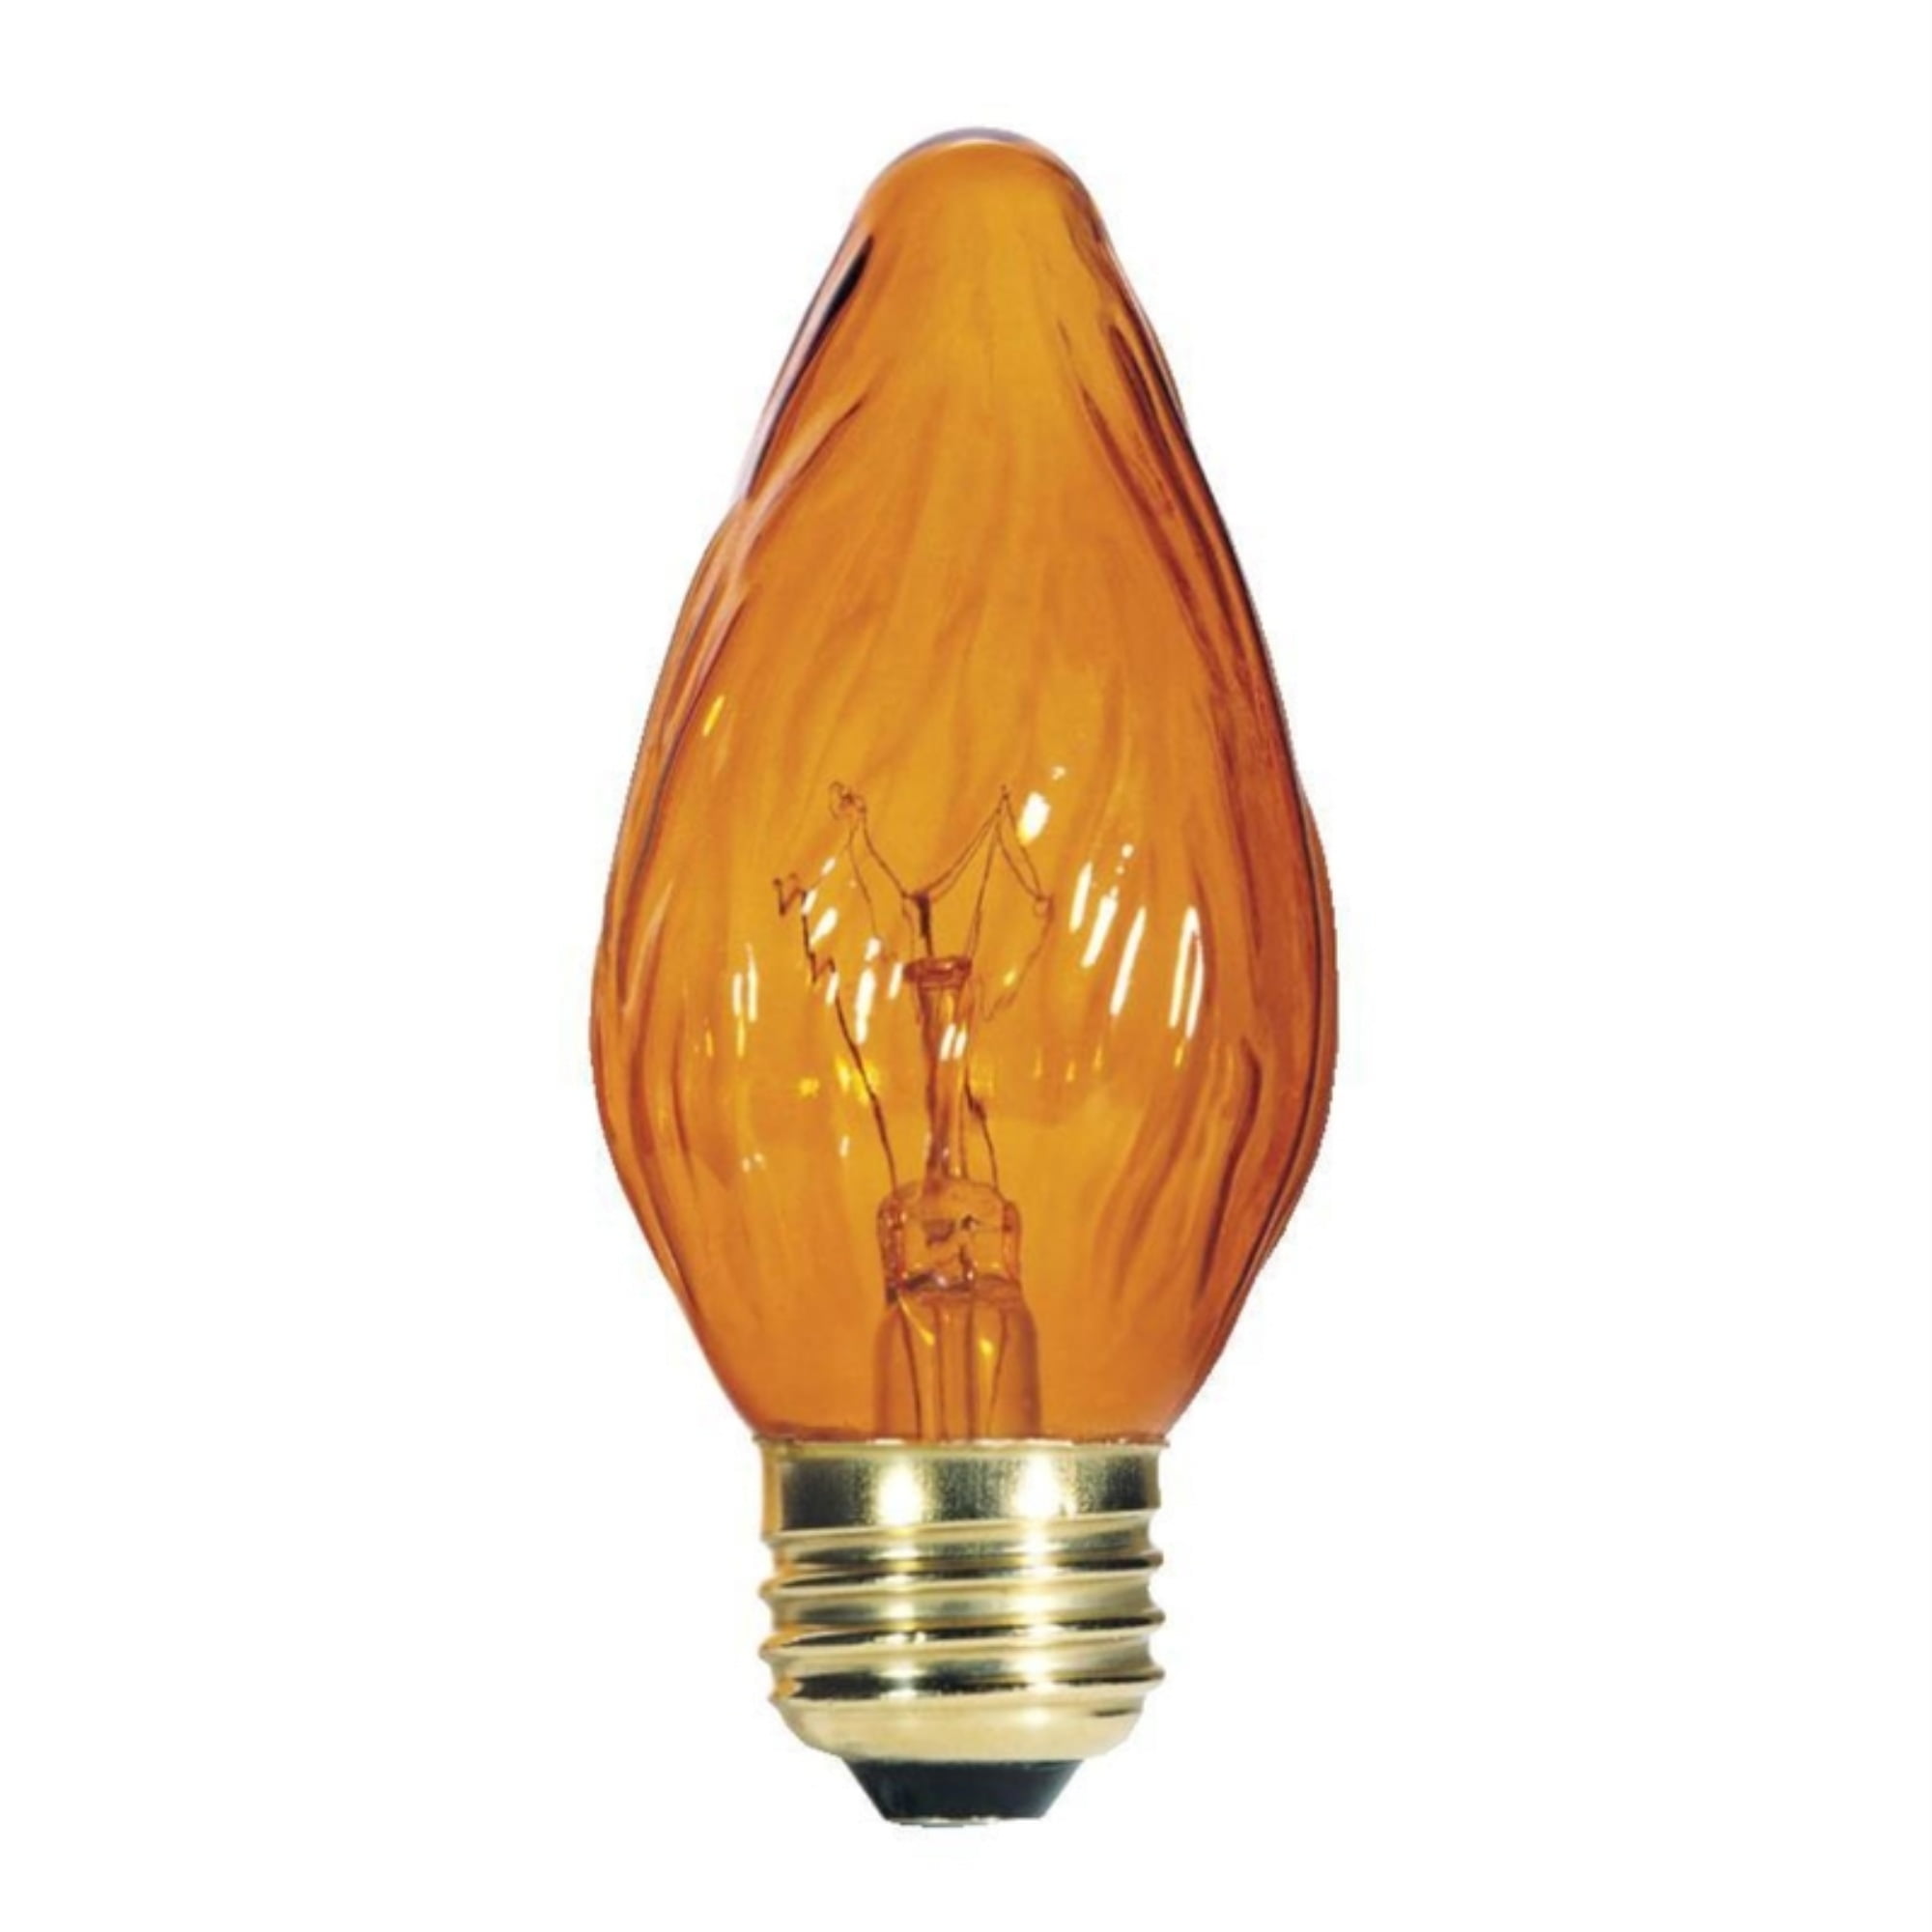 3914728 25 Watt F15 Decorative Incandescent Bulb - Amber, Pack Of 2 - 6 Pack Per Case